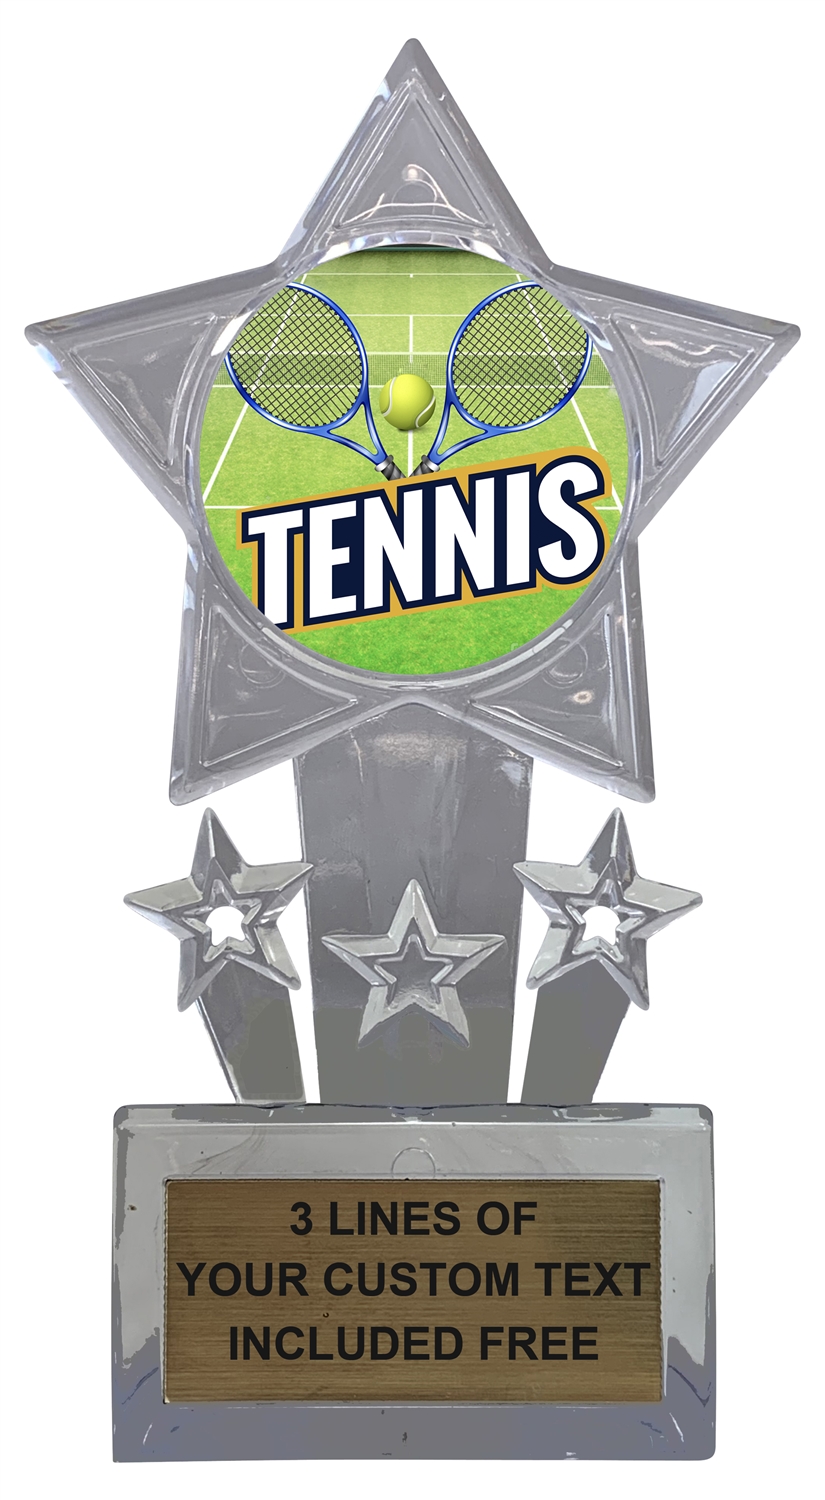 Tennis Trophy Cup